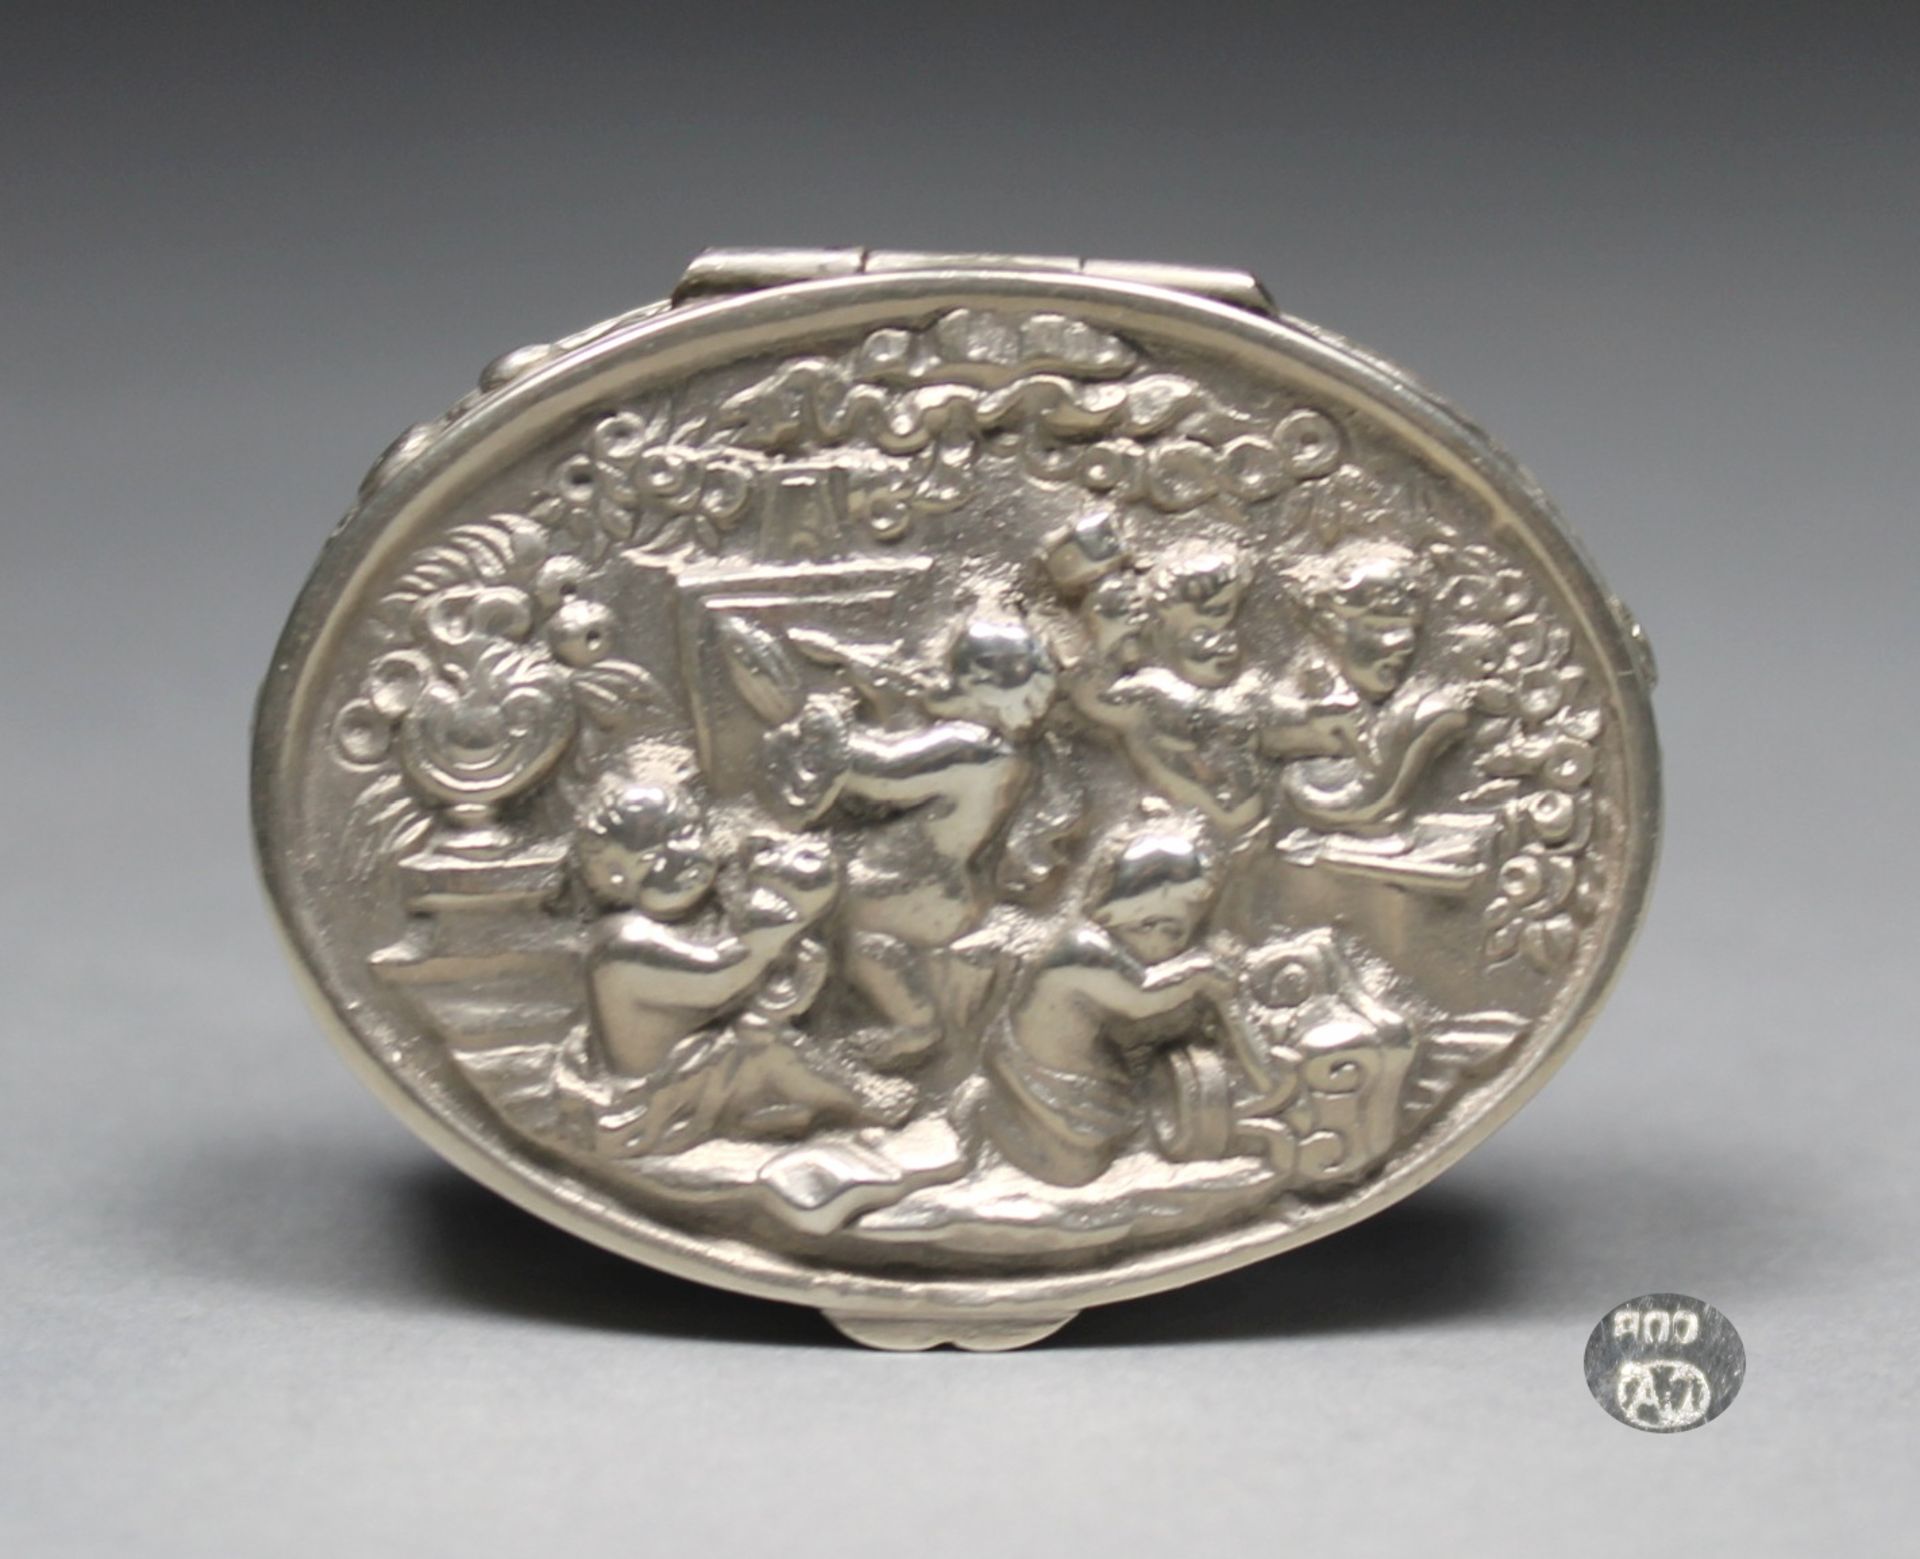 1 kleine Pillendose Silber (800/000), punziert, Deckel mit erhabenem Amorettendekor, Wandung mit